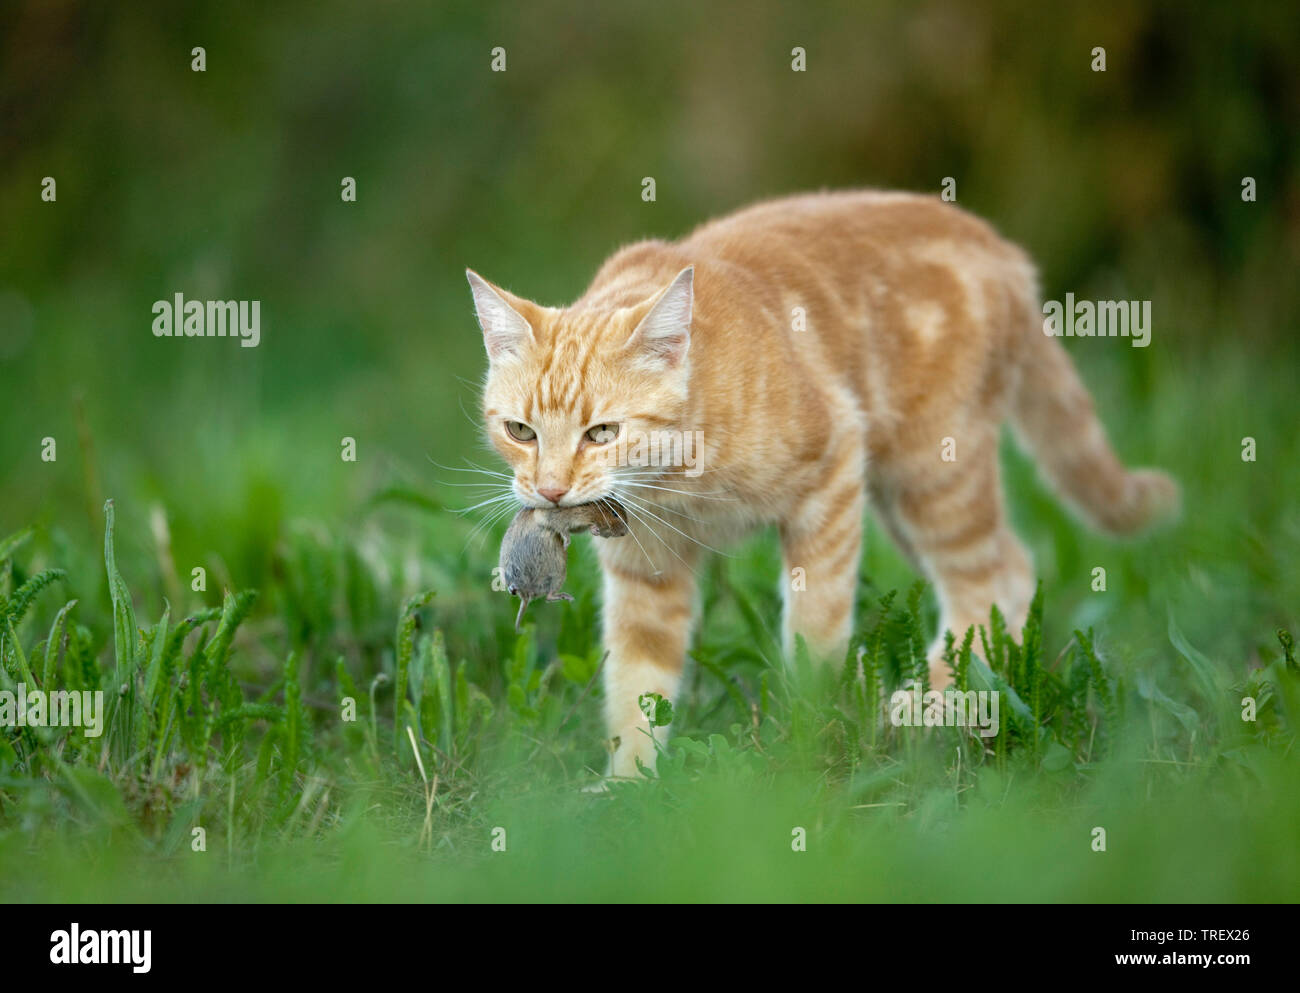 Les no de cat. Red-tabby adulte avec des proies de la souris marche à pied. Allemagne Banque D'Images